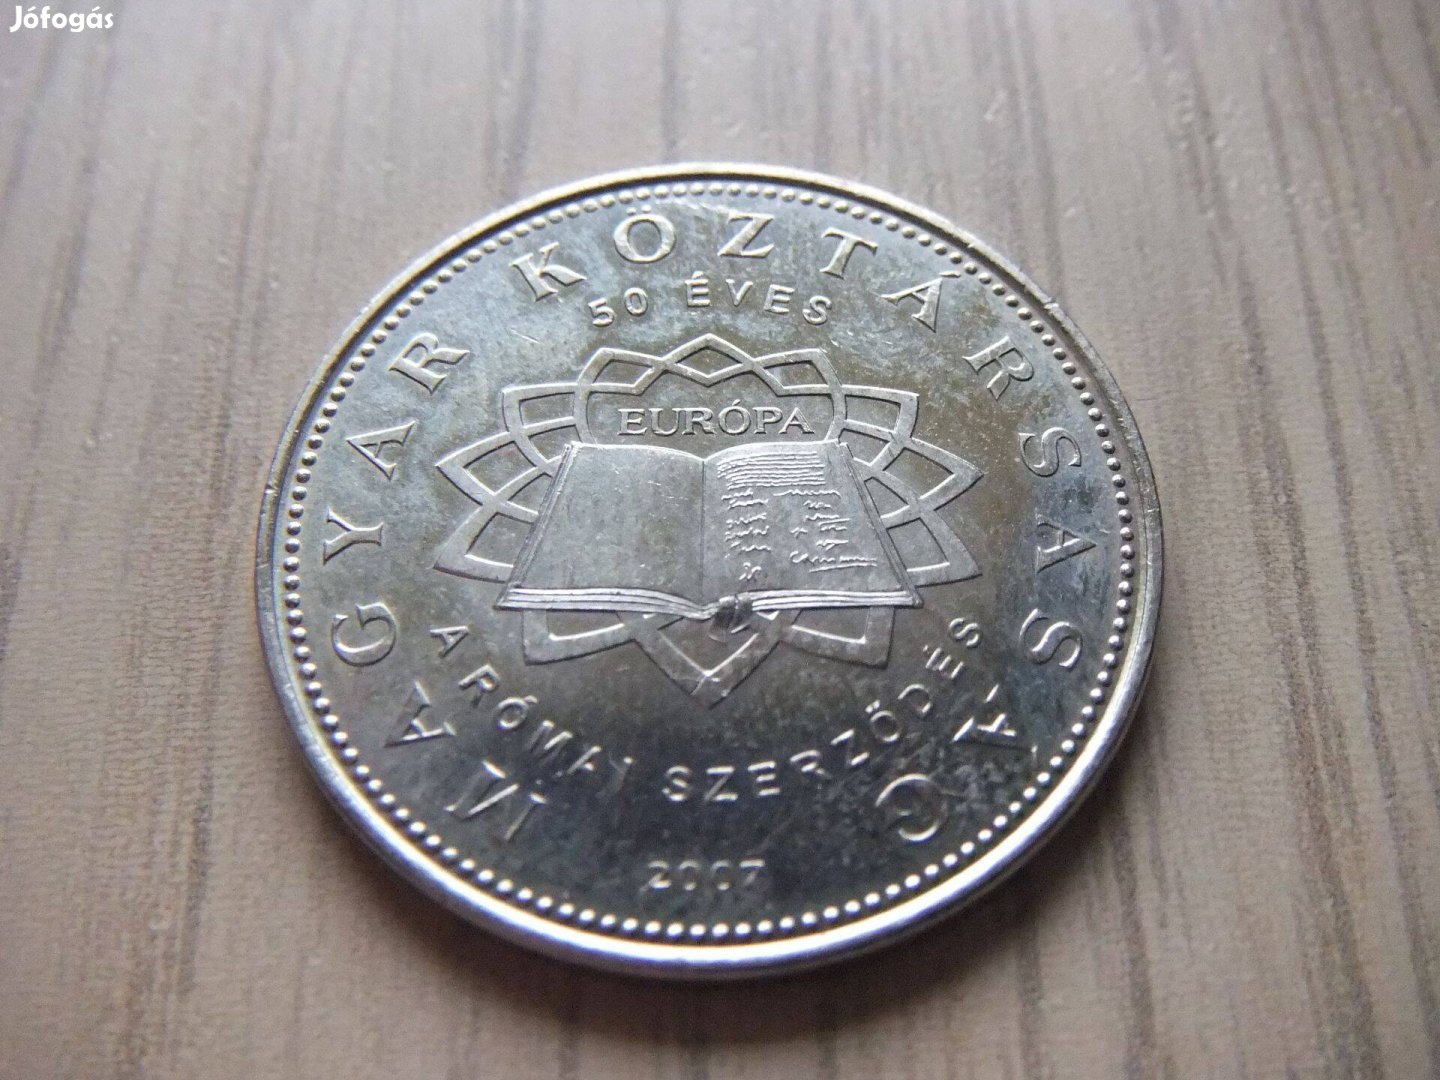 50 Forint 50 Éves a Római Szerződés 2007 Forgalomba volt